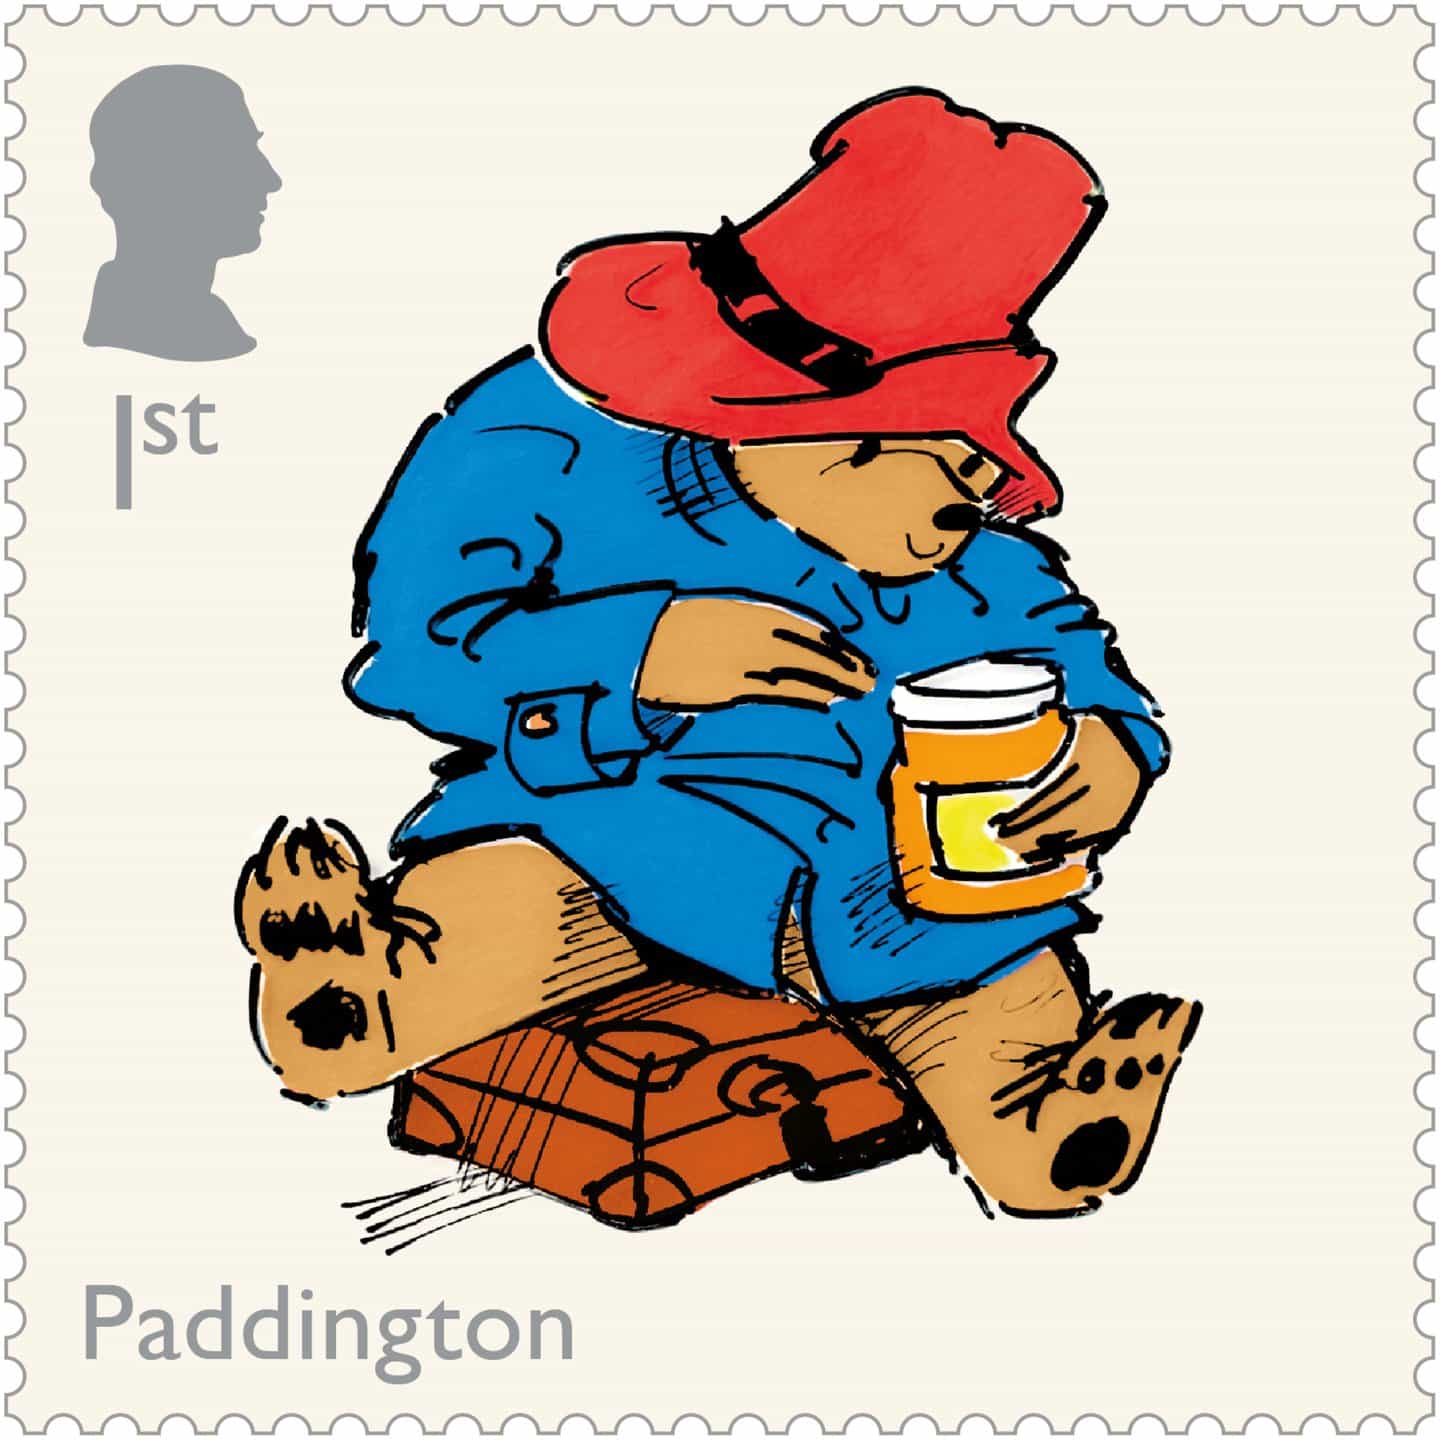 Dulce como la mermelada: Paddington es la última estrella de los sellos de aniversario de Royal Mail